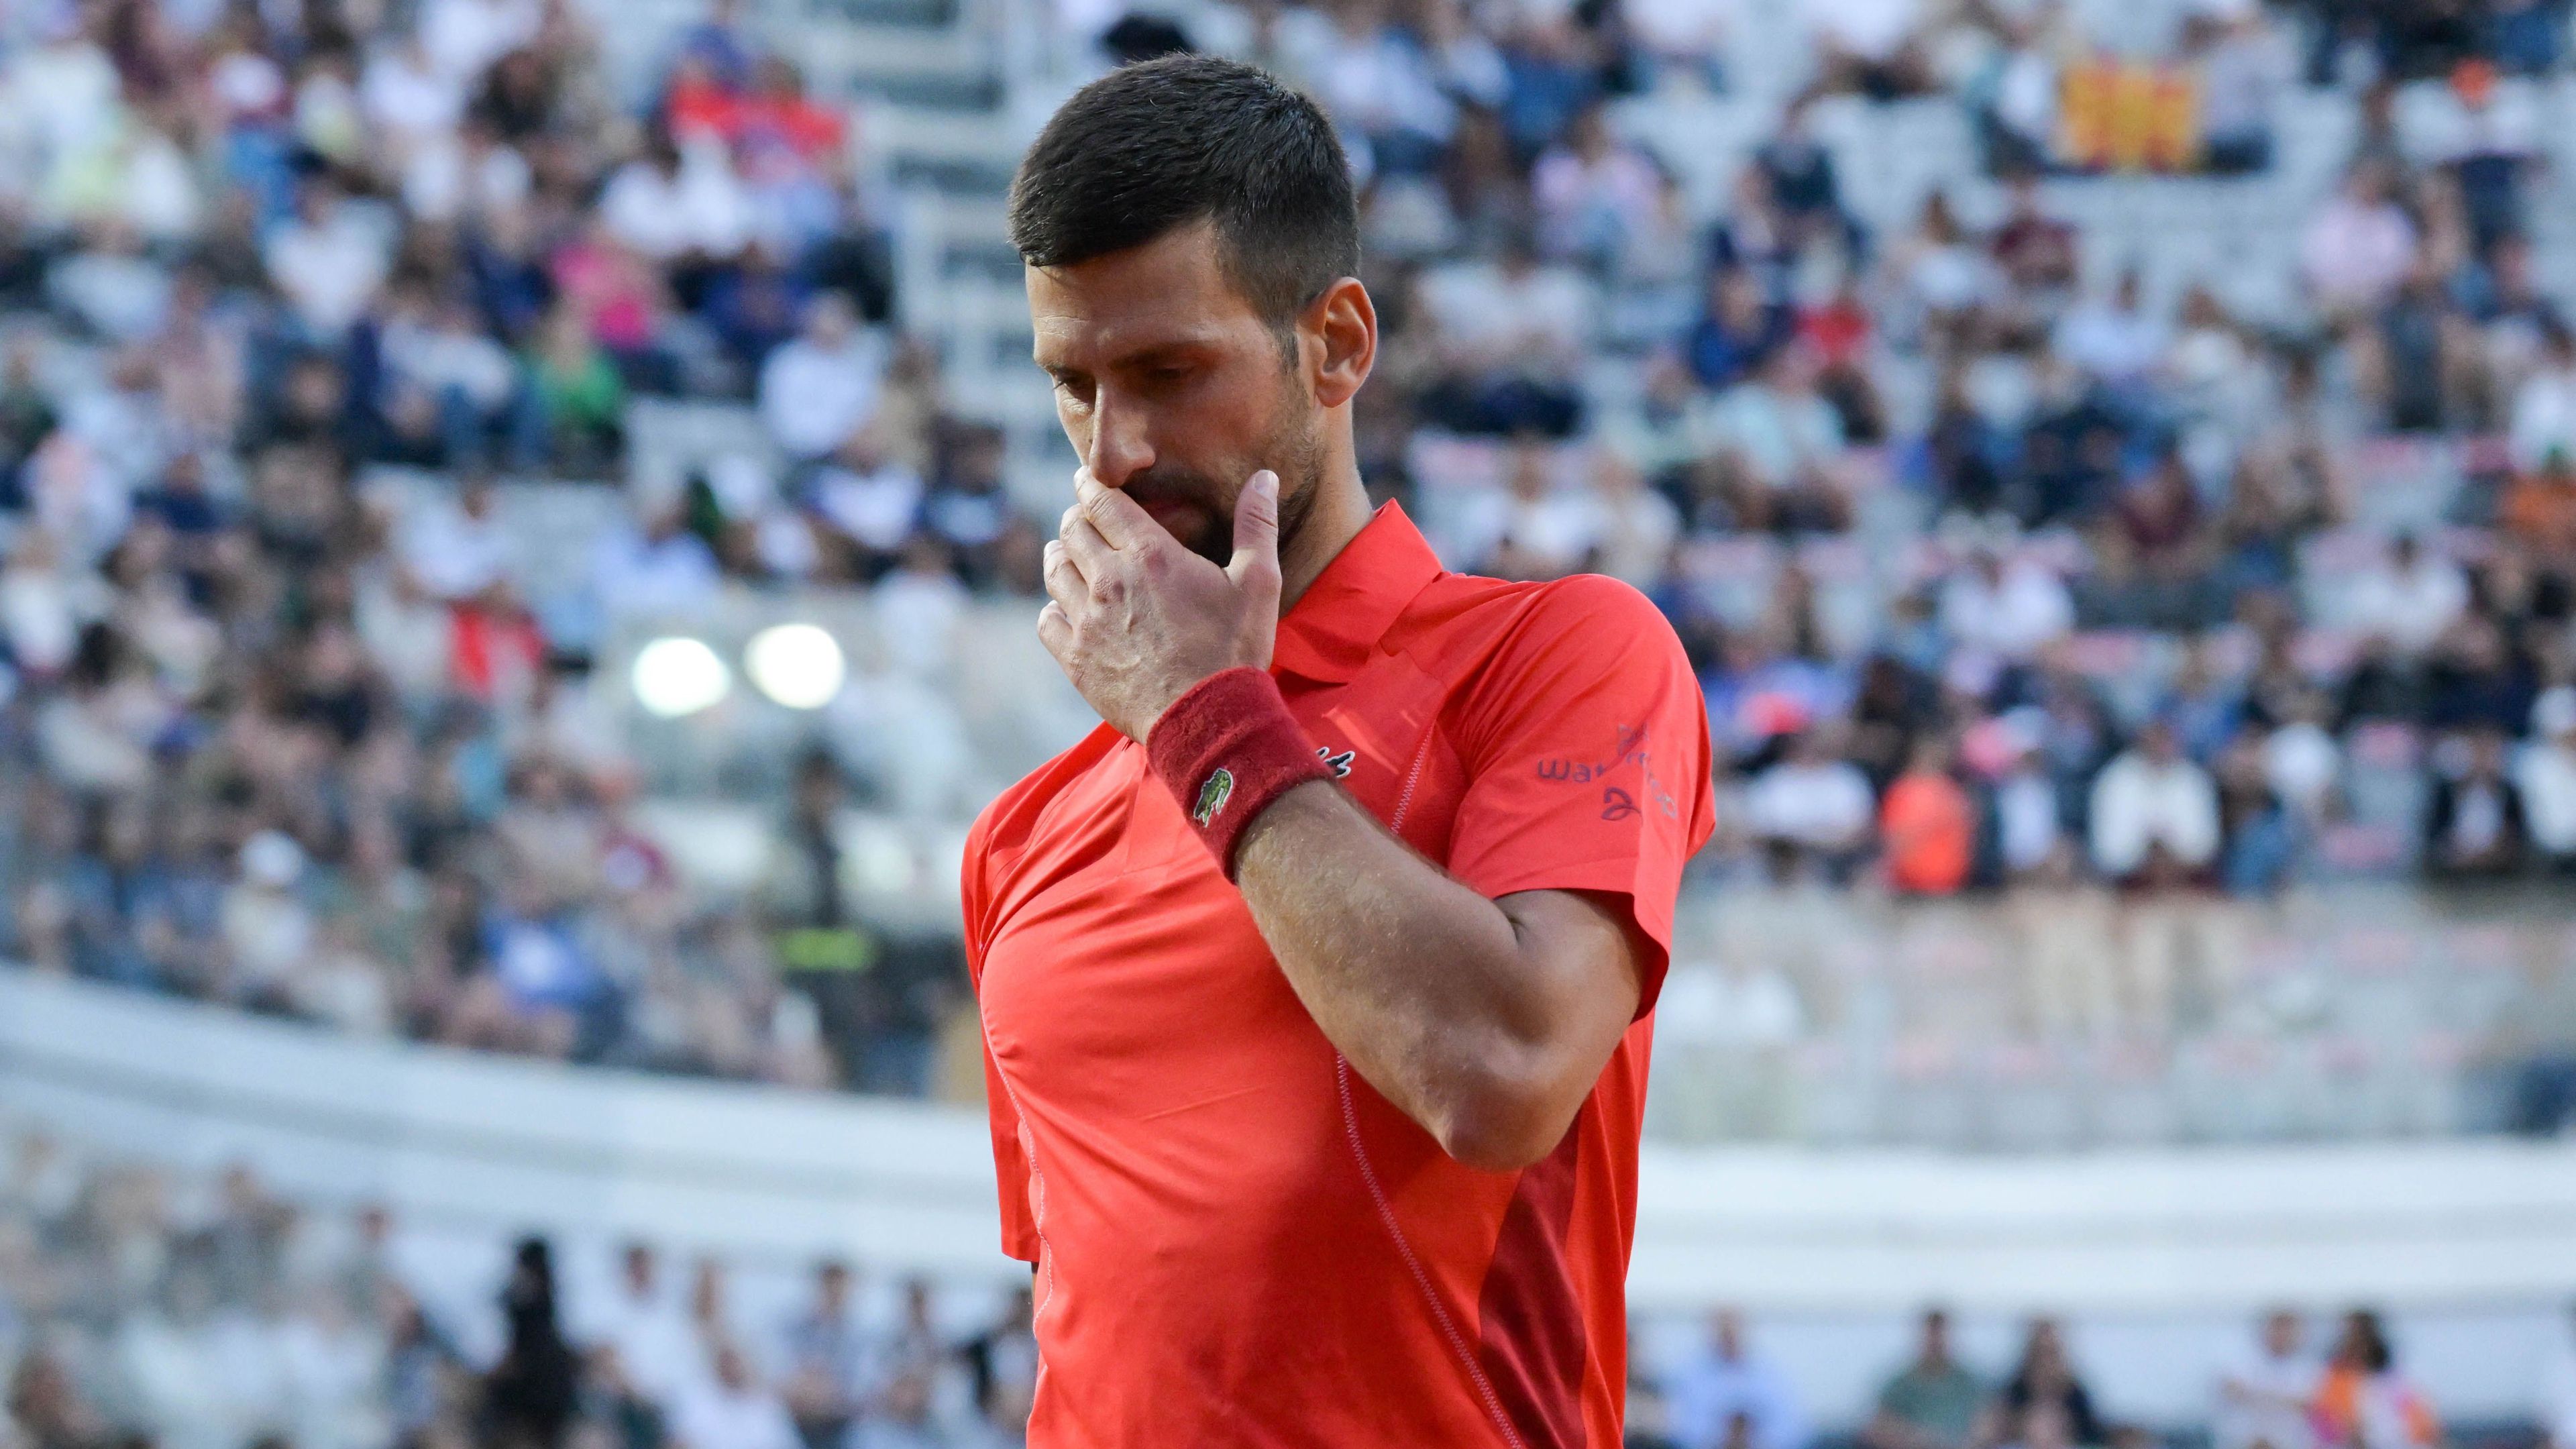 Szerencsére nincs komoly baja Novak Djokovicsnak